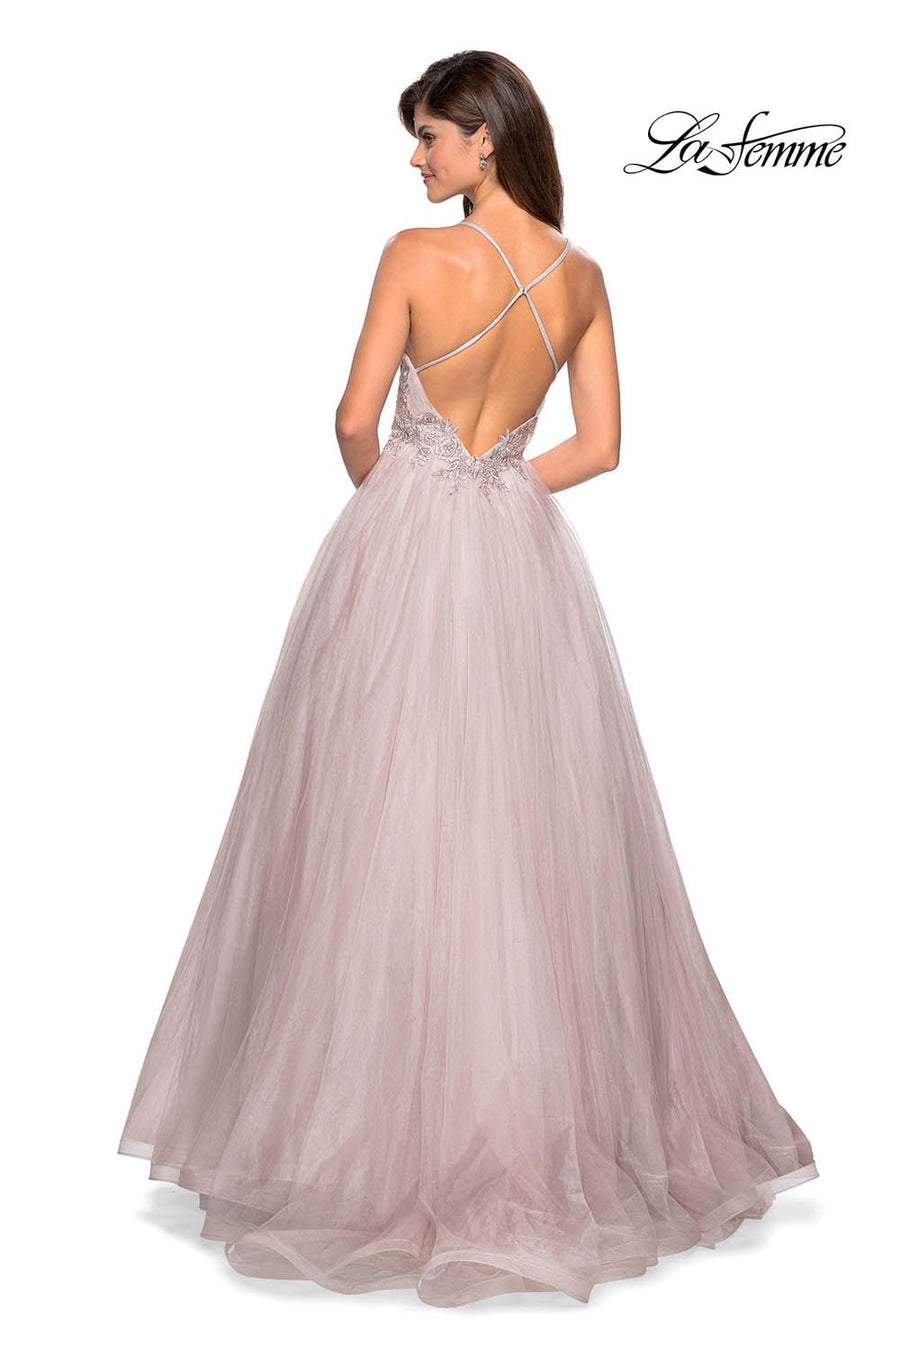 La Femme 27475 prom dress images.  La Femme 27475 is available in these colors: Cloud Blue Silver, Dusty Mauve.